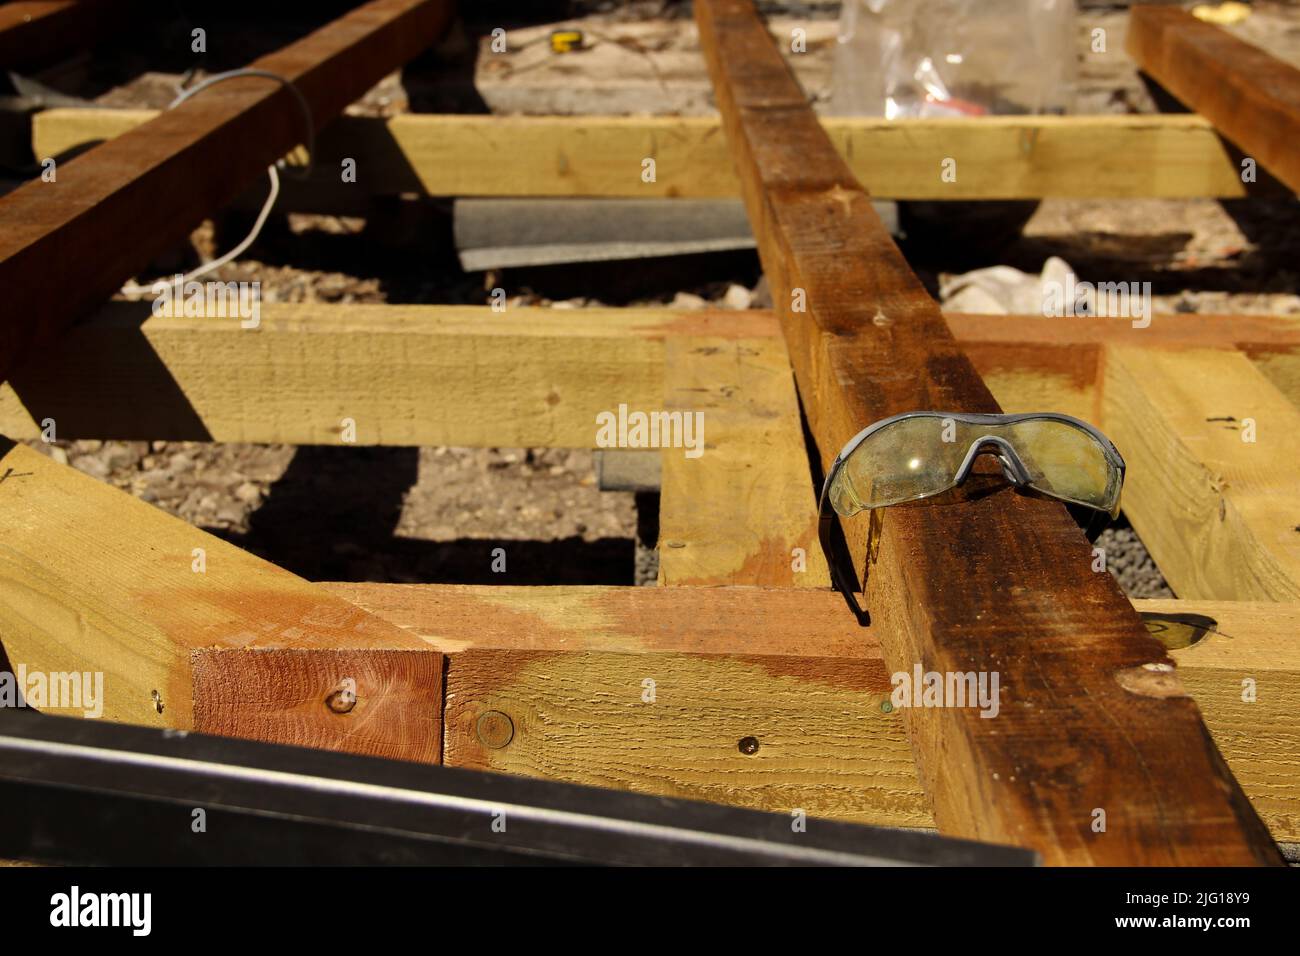 Sicherheitsbrille aus Kunststoff. Auf einem Balken liegende Schutzbrille verwenden. Stockfoto